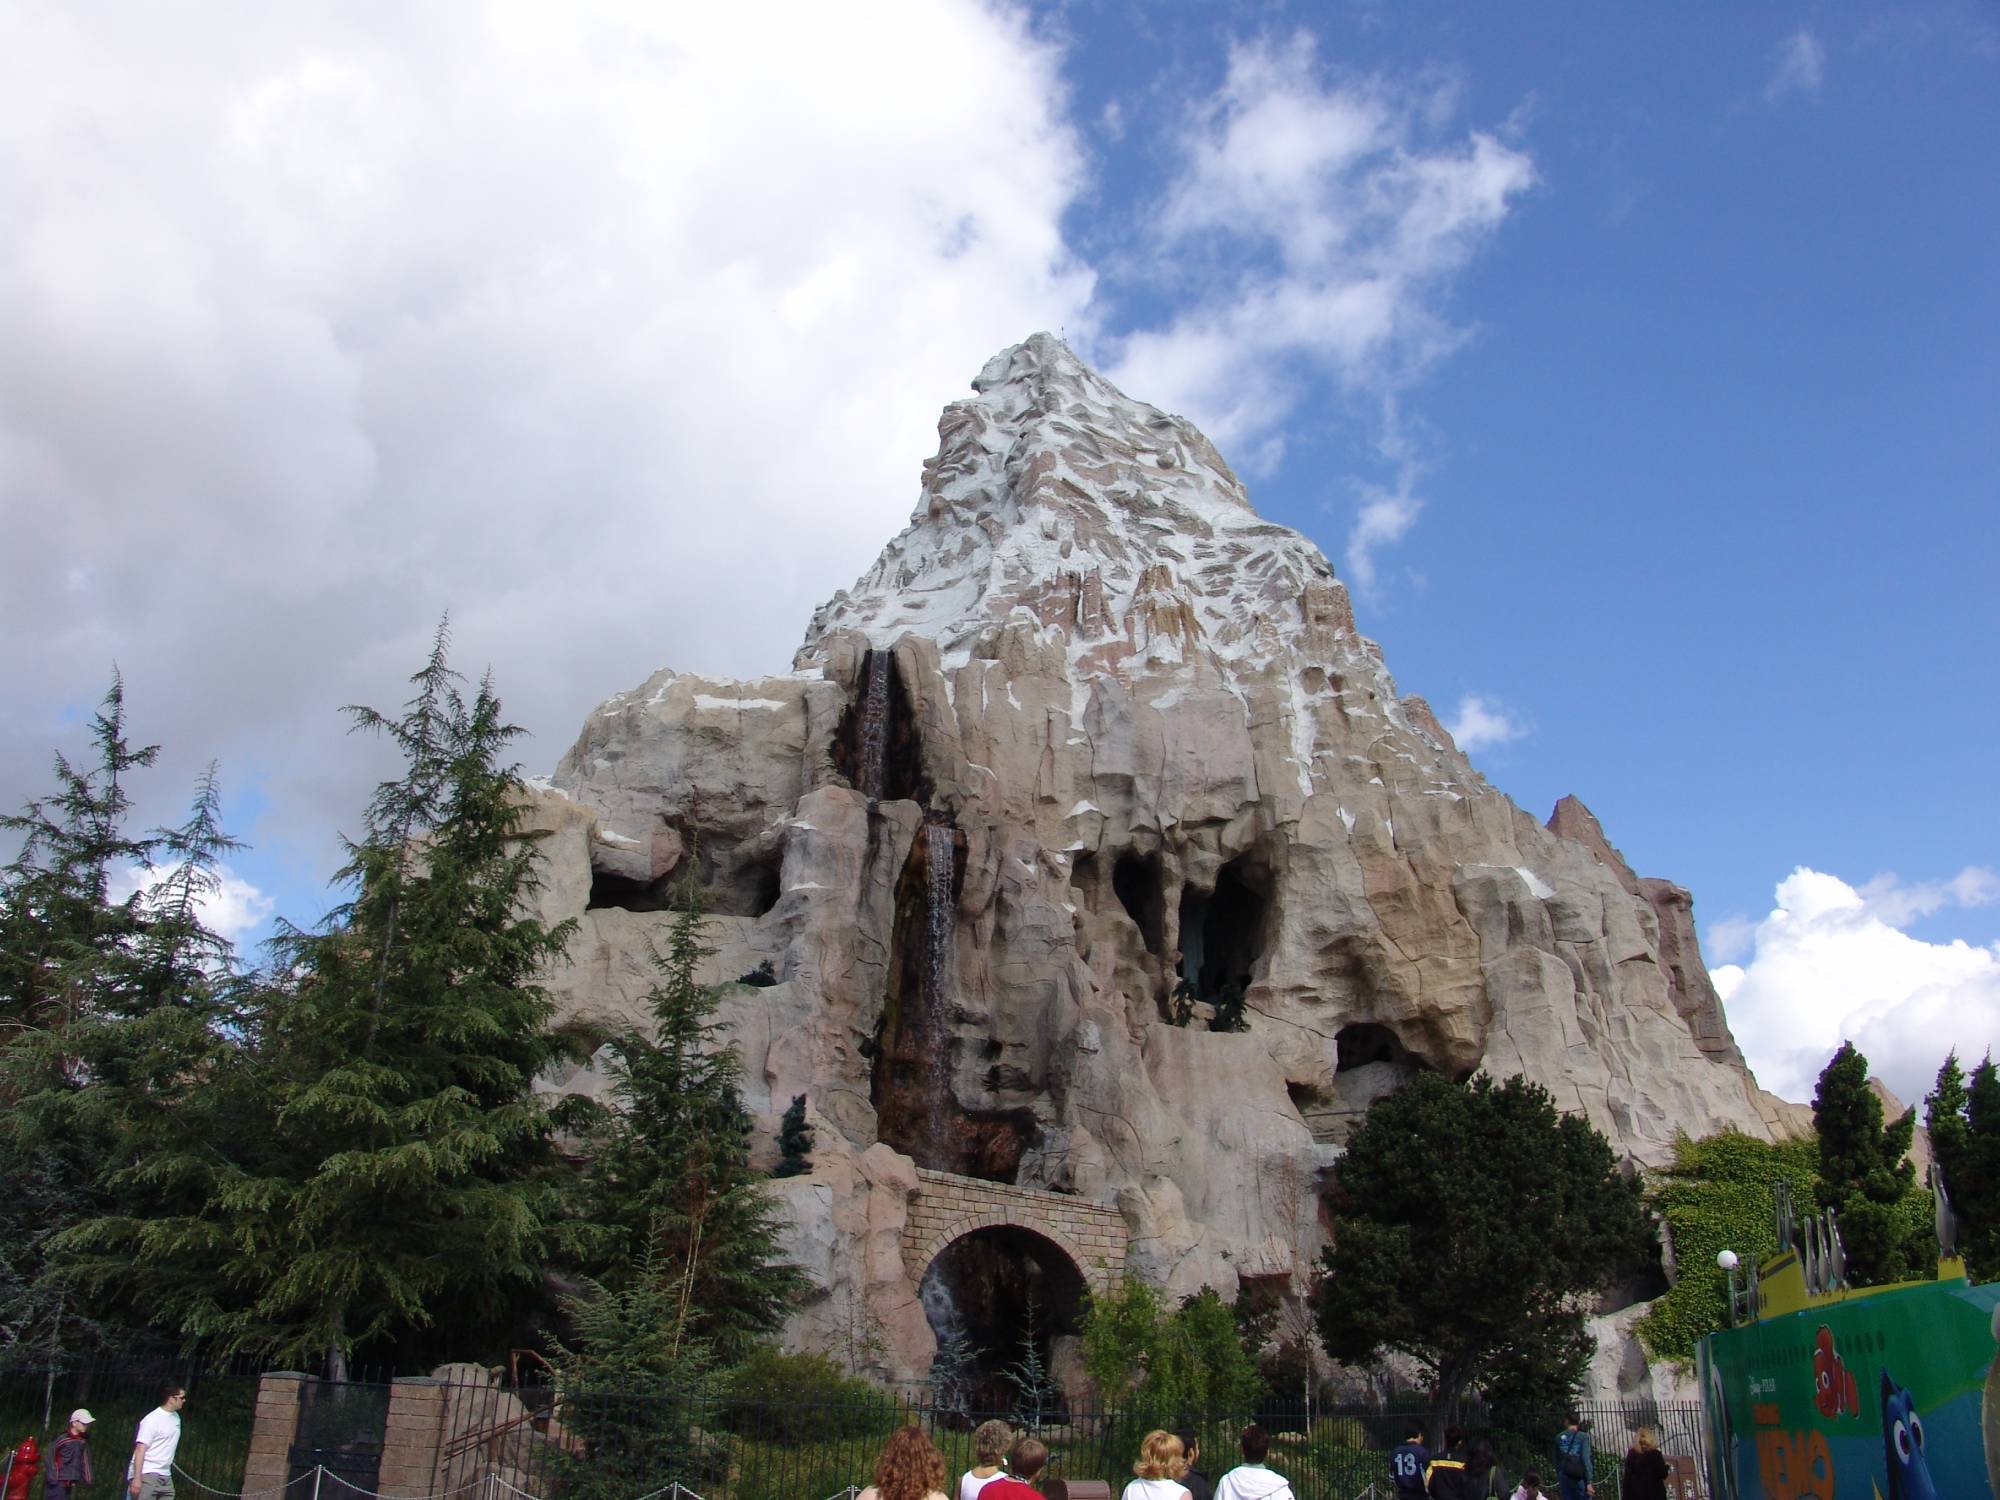 Explore the original theme park - Disneyland! |PassPorter.com